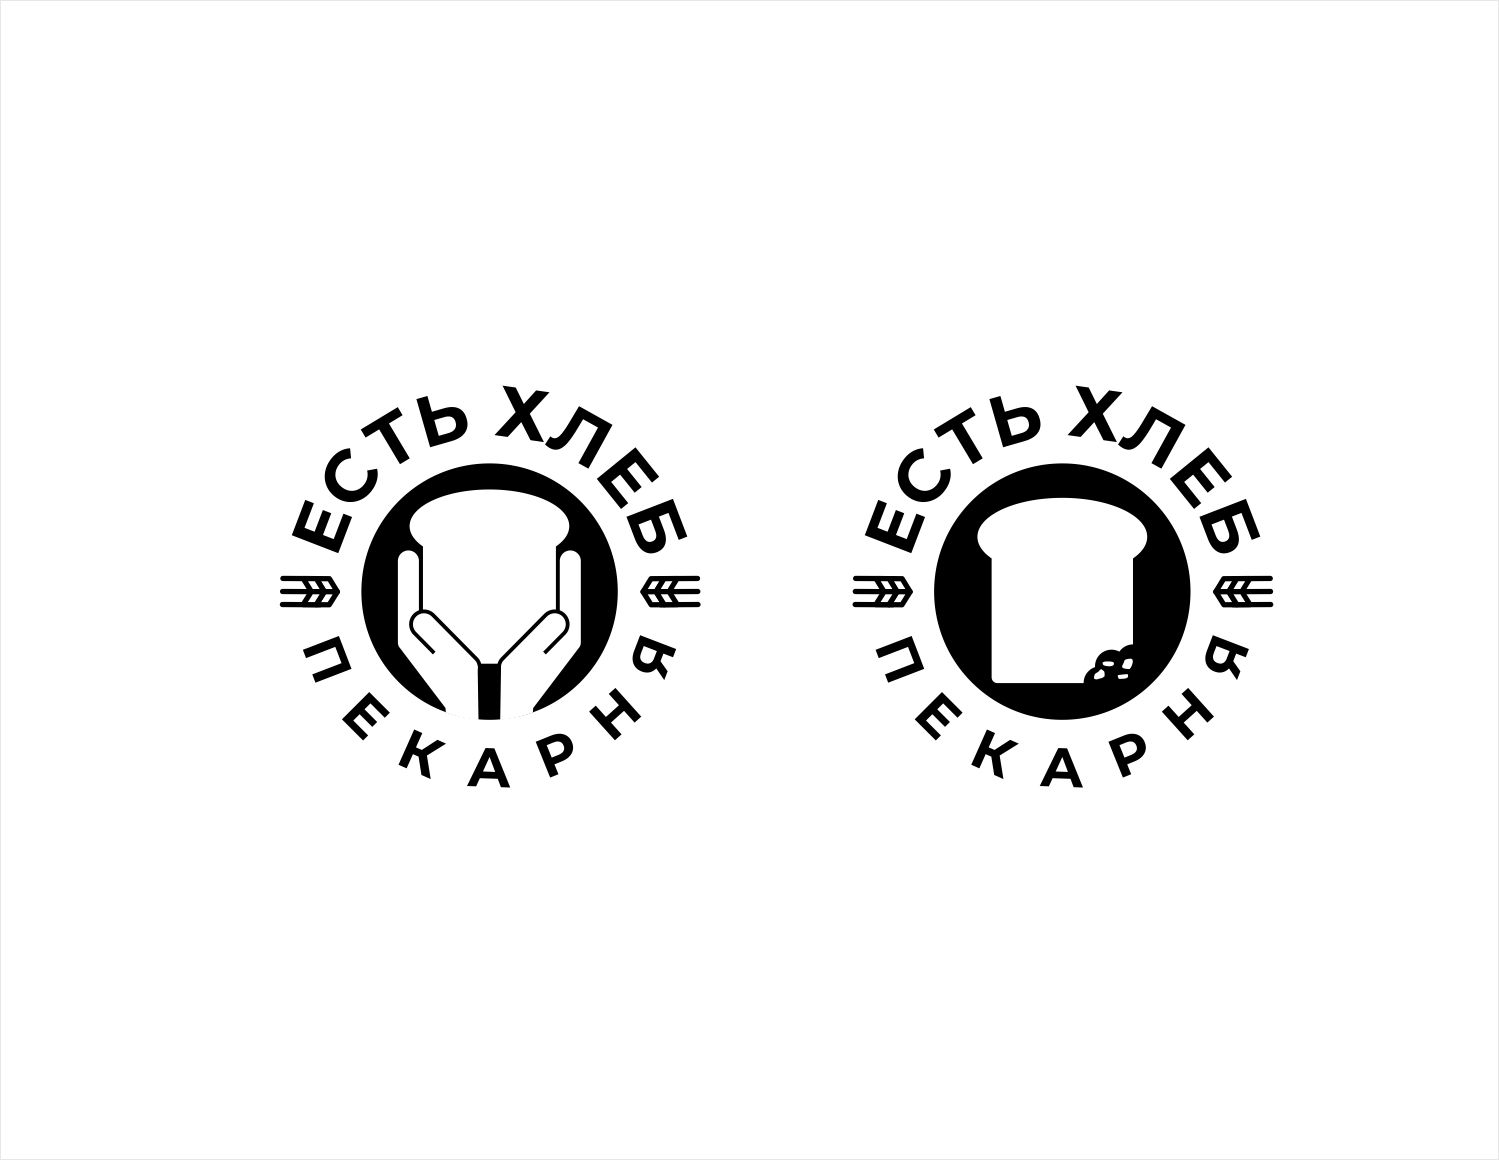 Логотип для Пекарня Есть Хлеб - дизайнер kras-sky